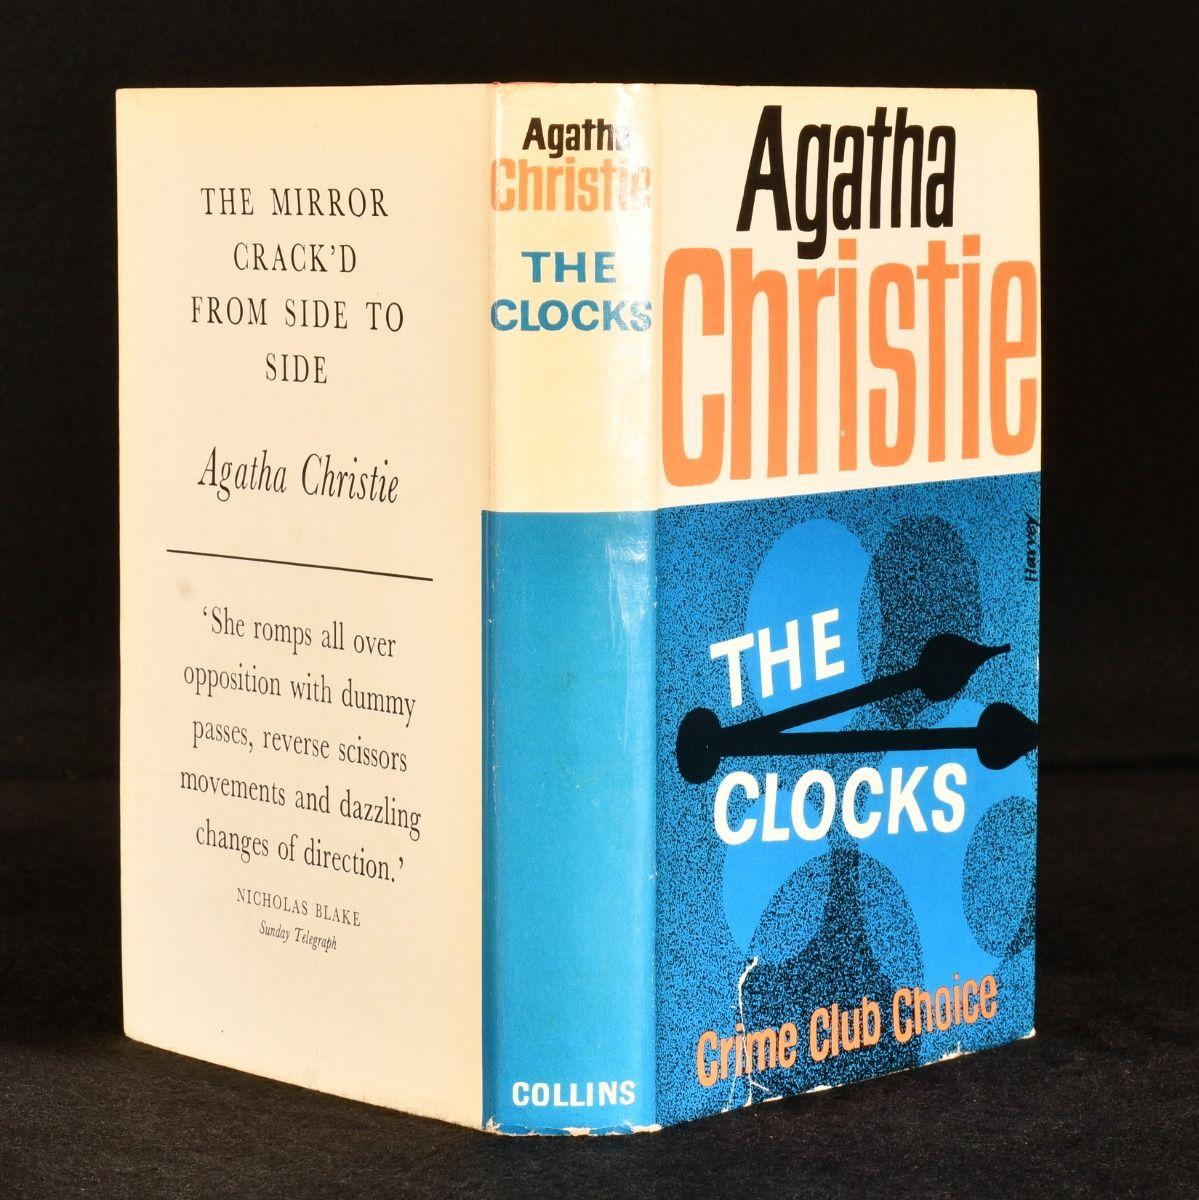 Édition originale signée de ce récit de voyage évocateur d'Agatha Christie, qui se fait de plus en plus rare. Signé et dédié à son secrétaire et ami, Carlo Fisher.

Première édition, première impression, aucune autre impression n'est